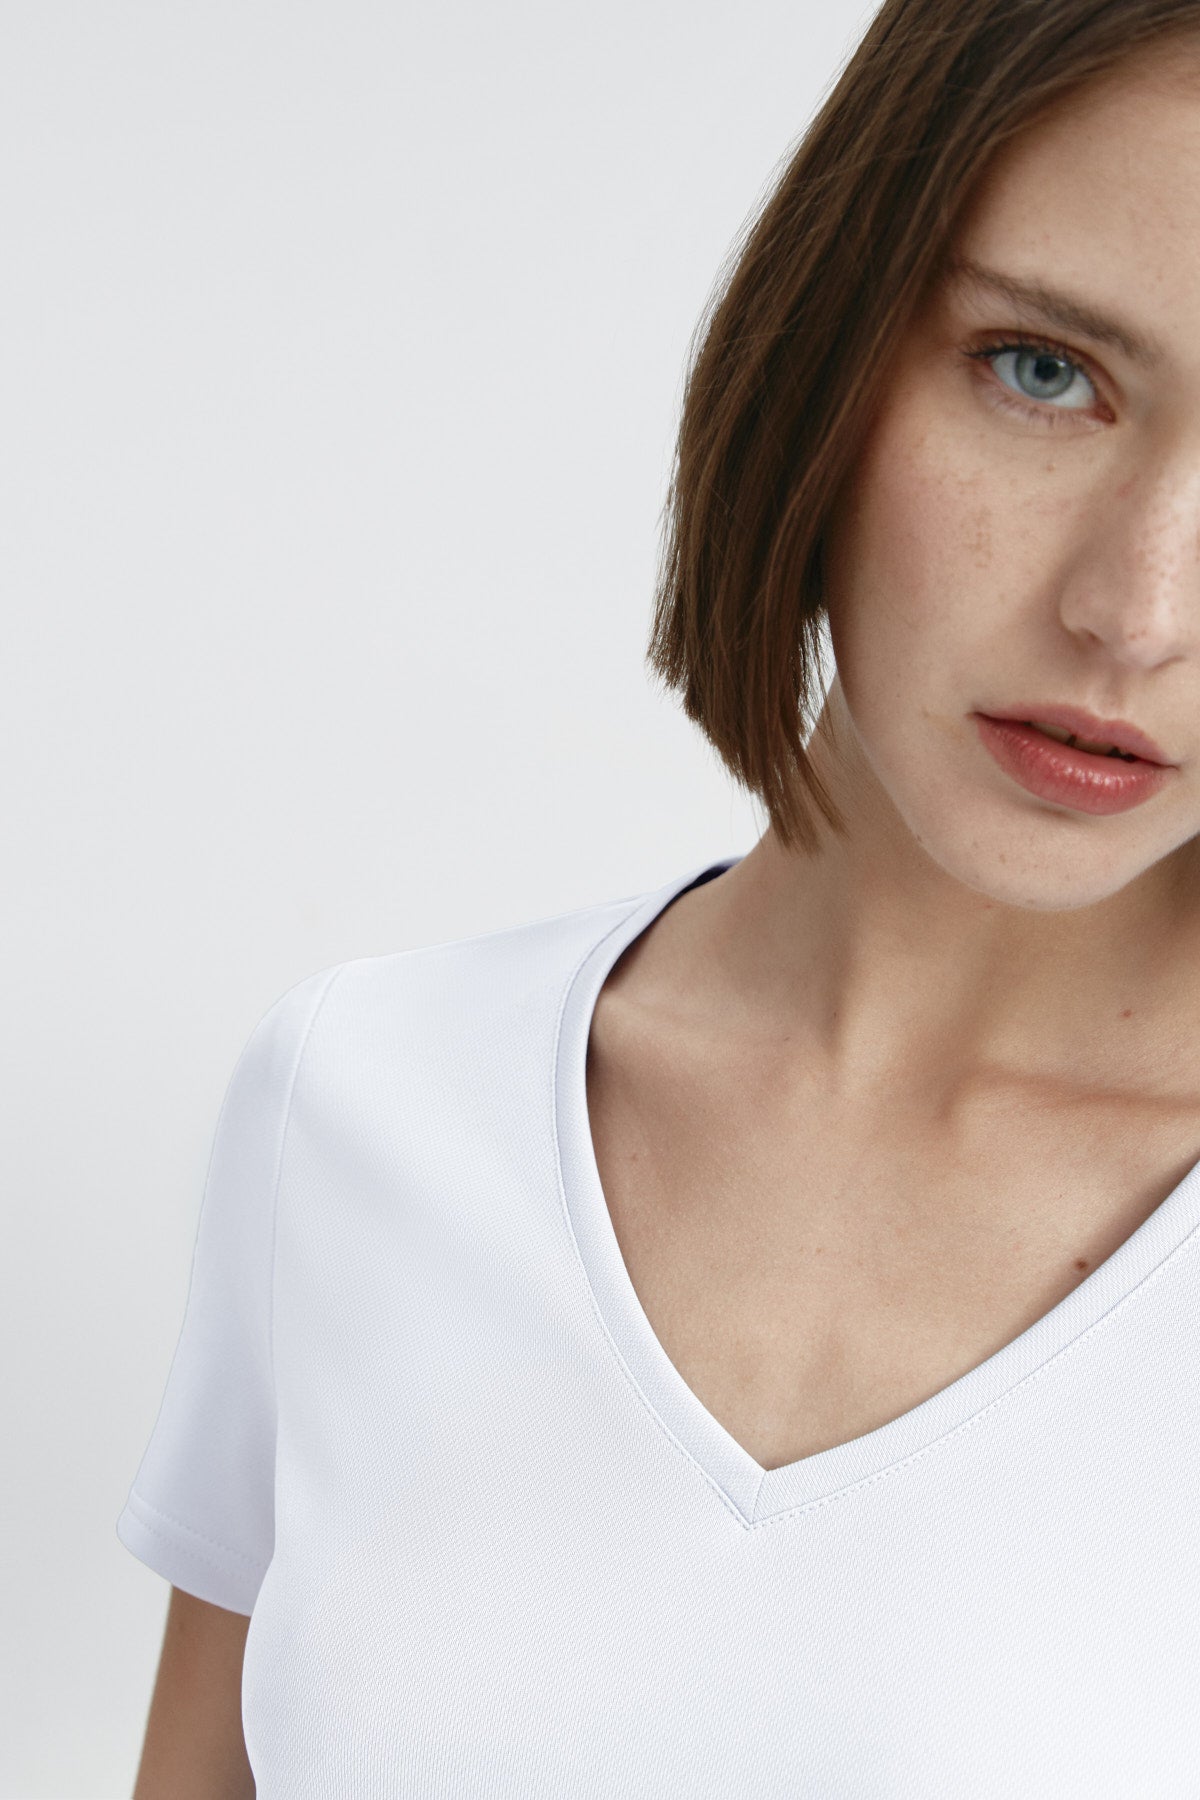 Top para mujer sin mangas con escote pico color blanco, básico. Foto retrato